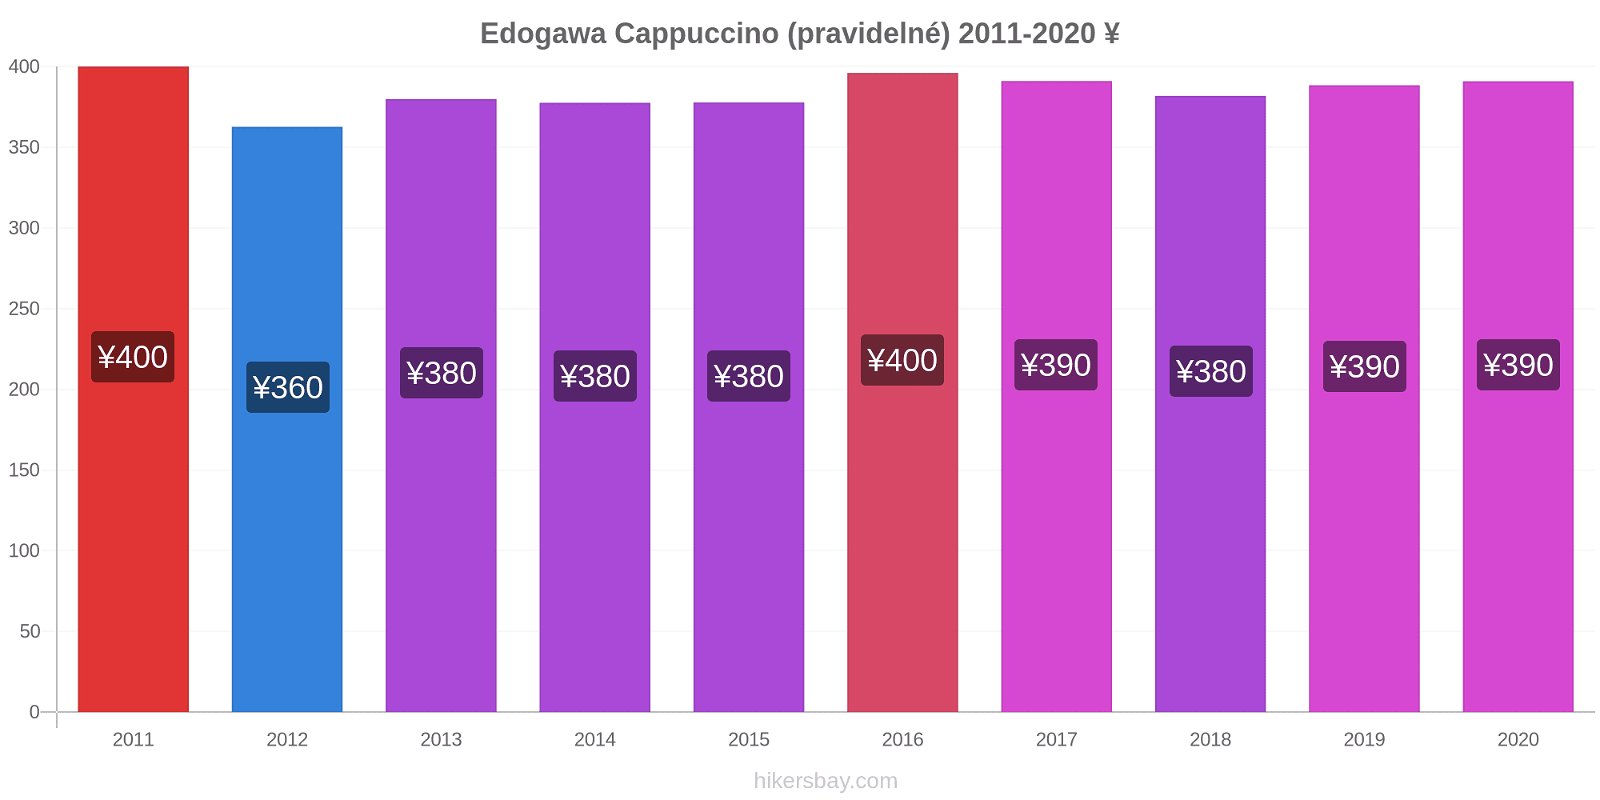 Edogawa změny cen Cappuccino (pravidelné) hikersbay.com